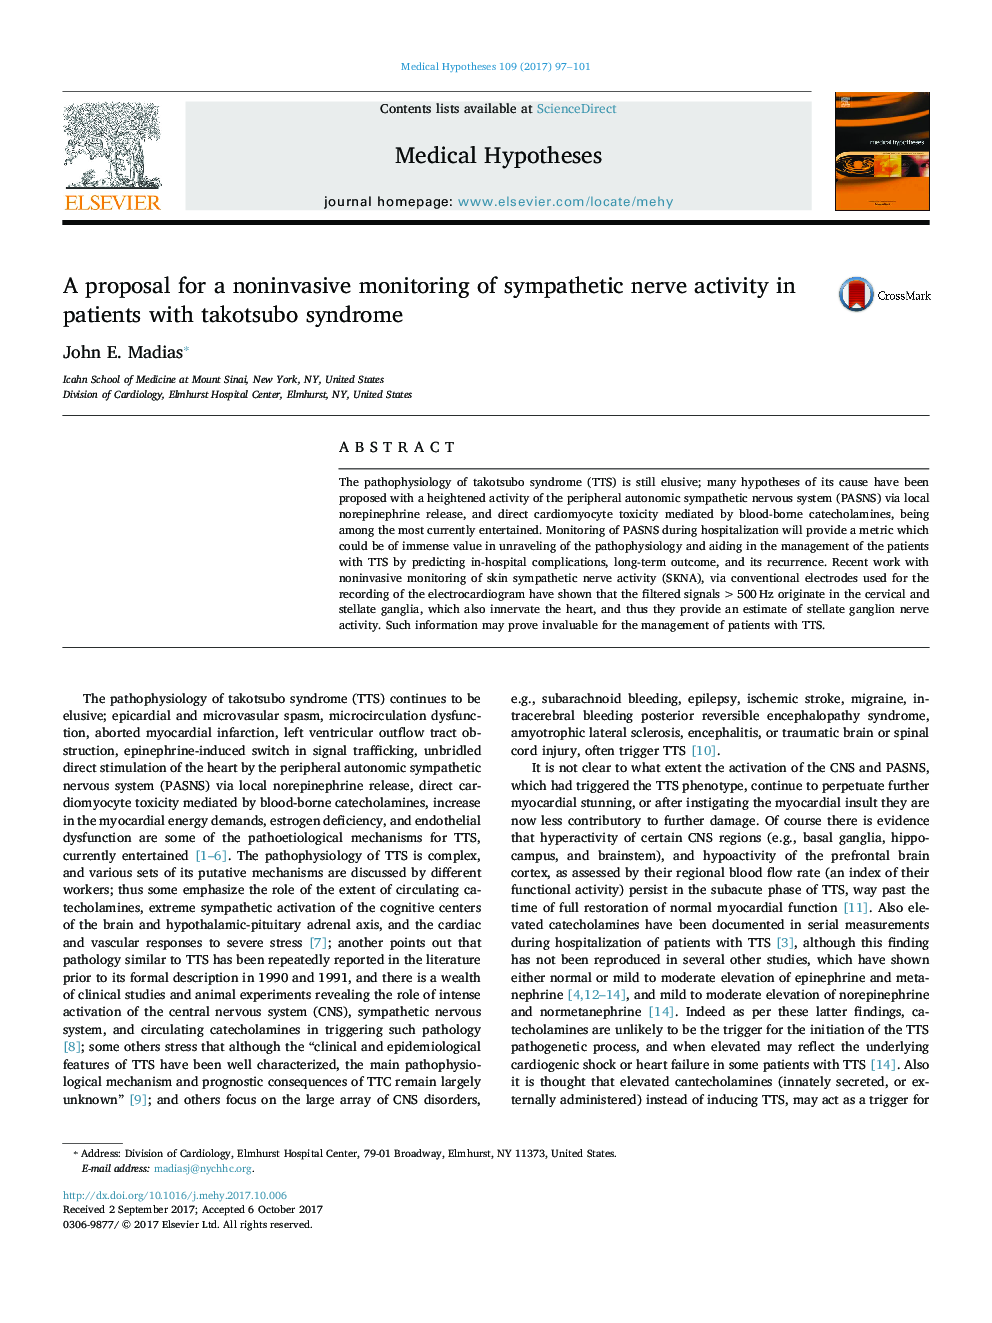 پیشنهادی برای نظارت غیرمستقیم فعالیت عصب سمپاتیک در بیماران مبتلا به سندرم تاکوزوبو 